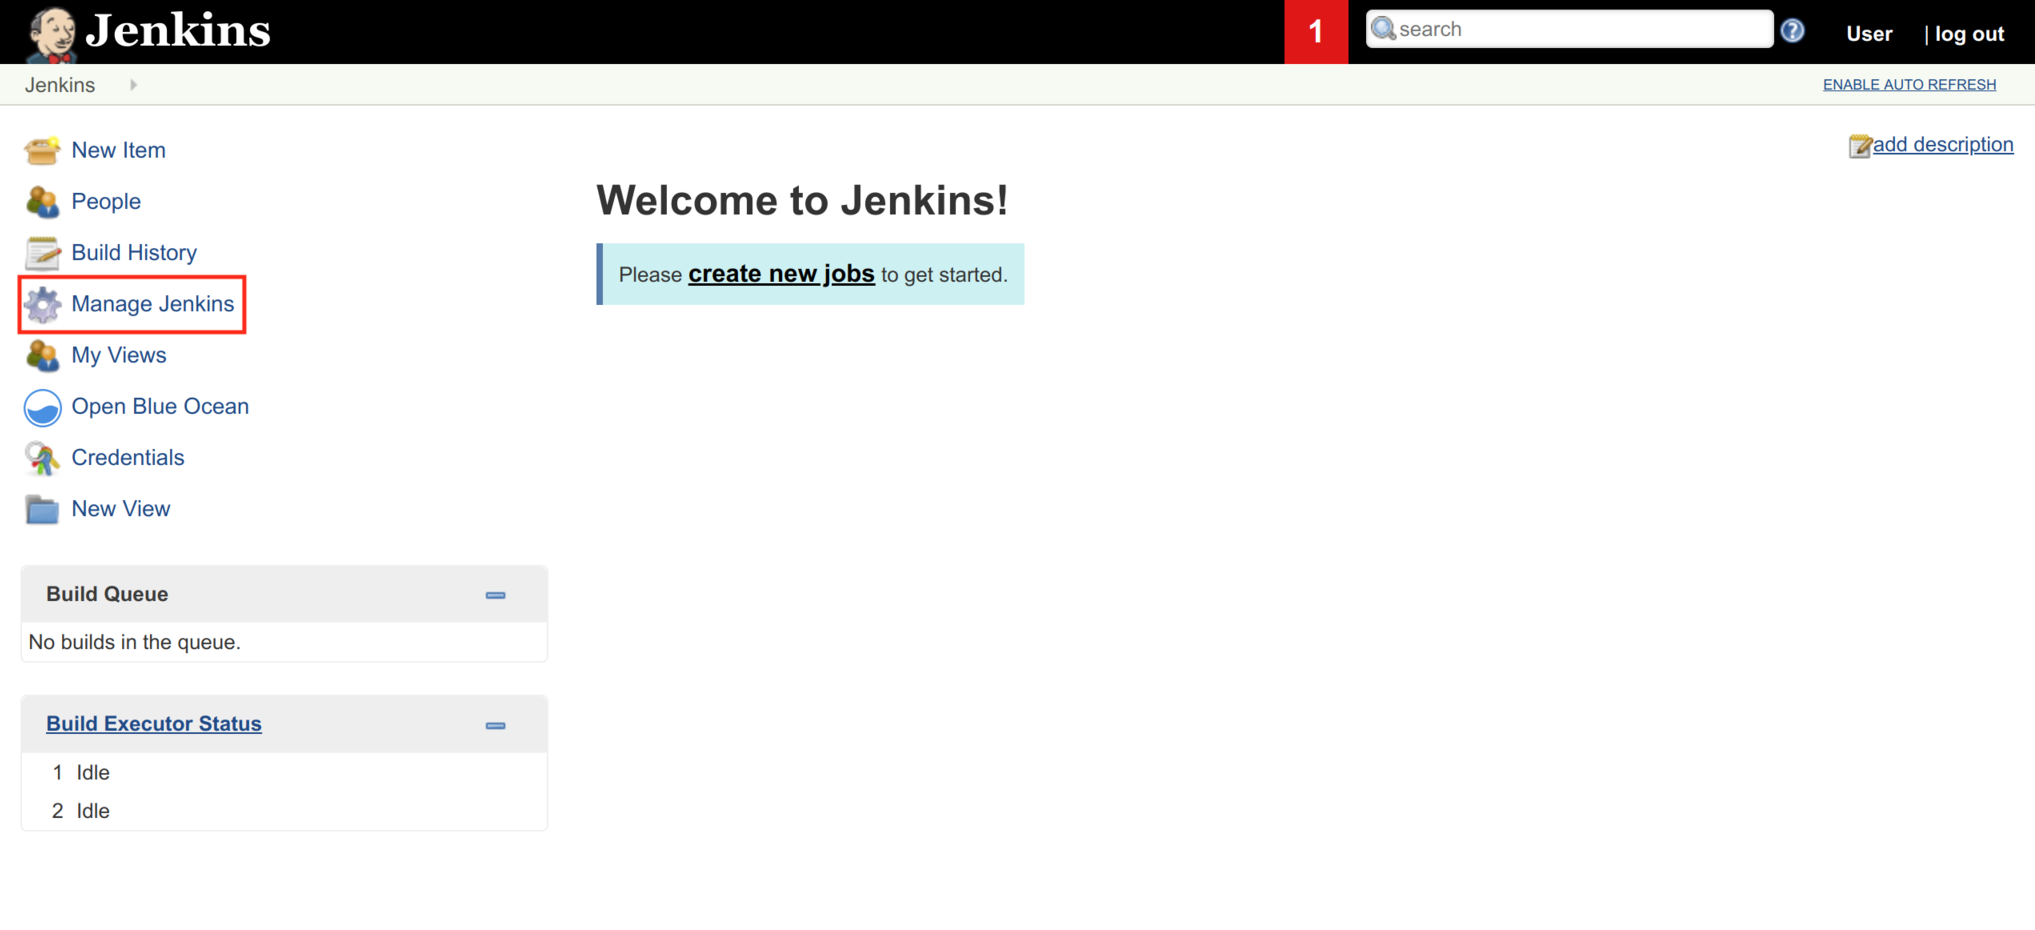 Manage Jenkins